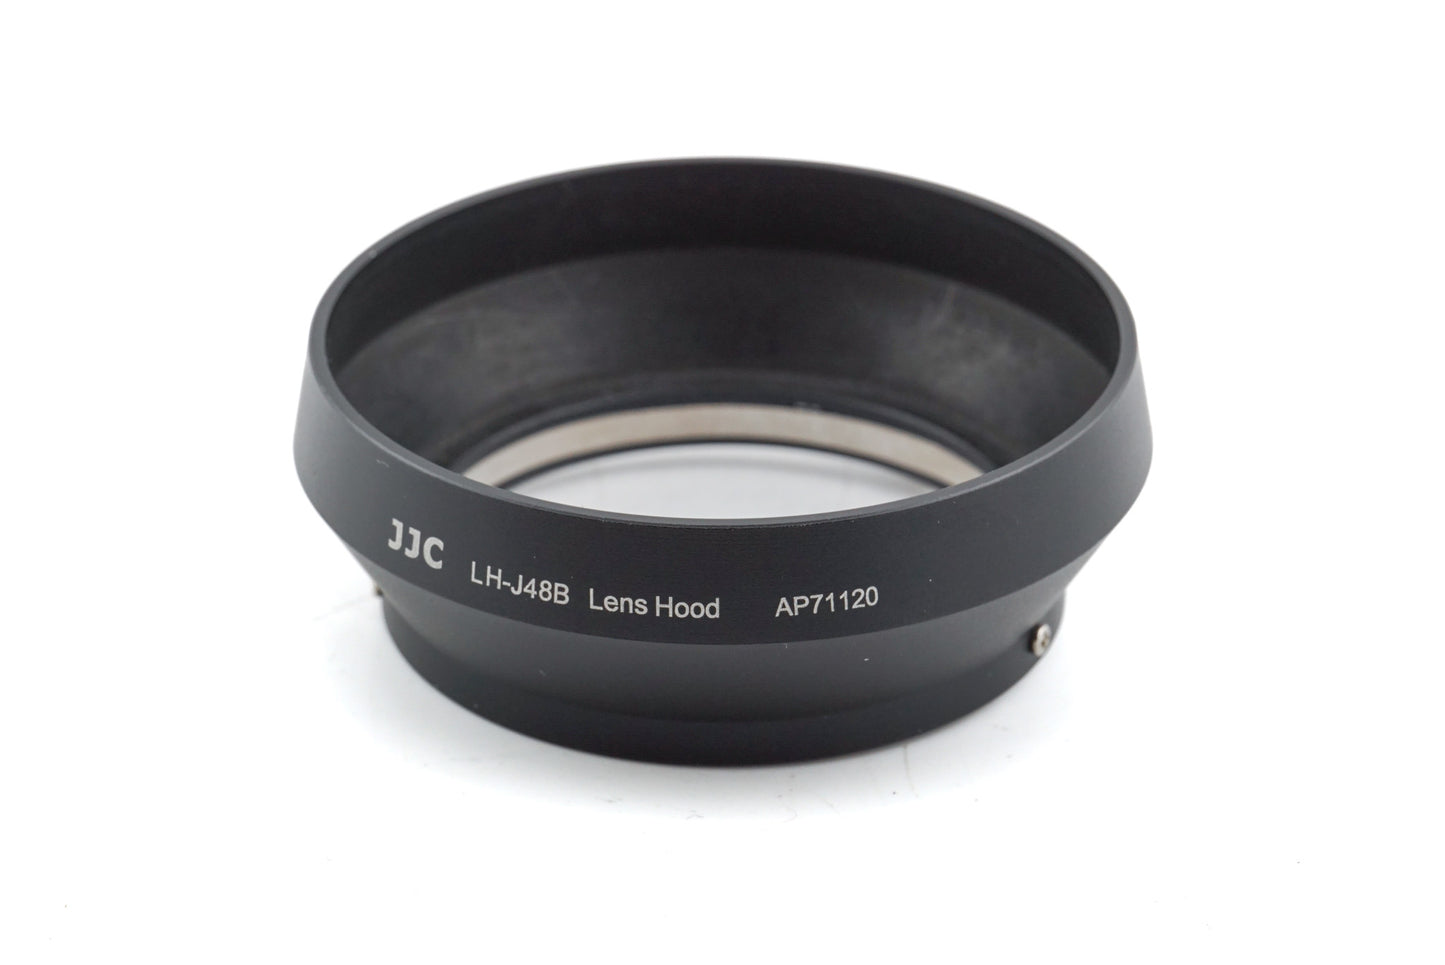 JJC 48mm Lens Hood for M.Zuiko 17mm f1.8 (LH-J48B) - Accessory